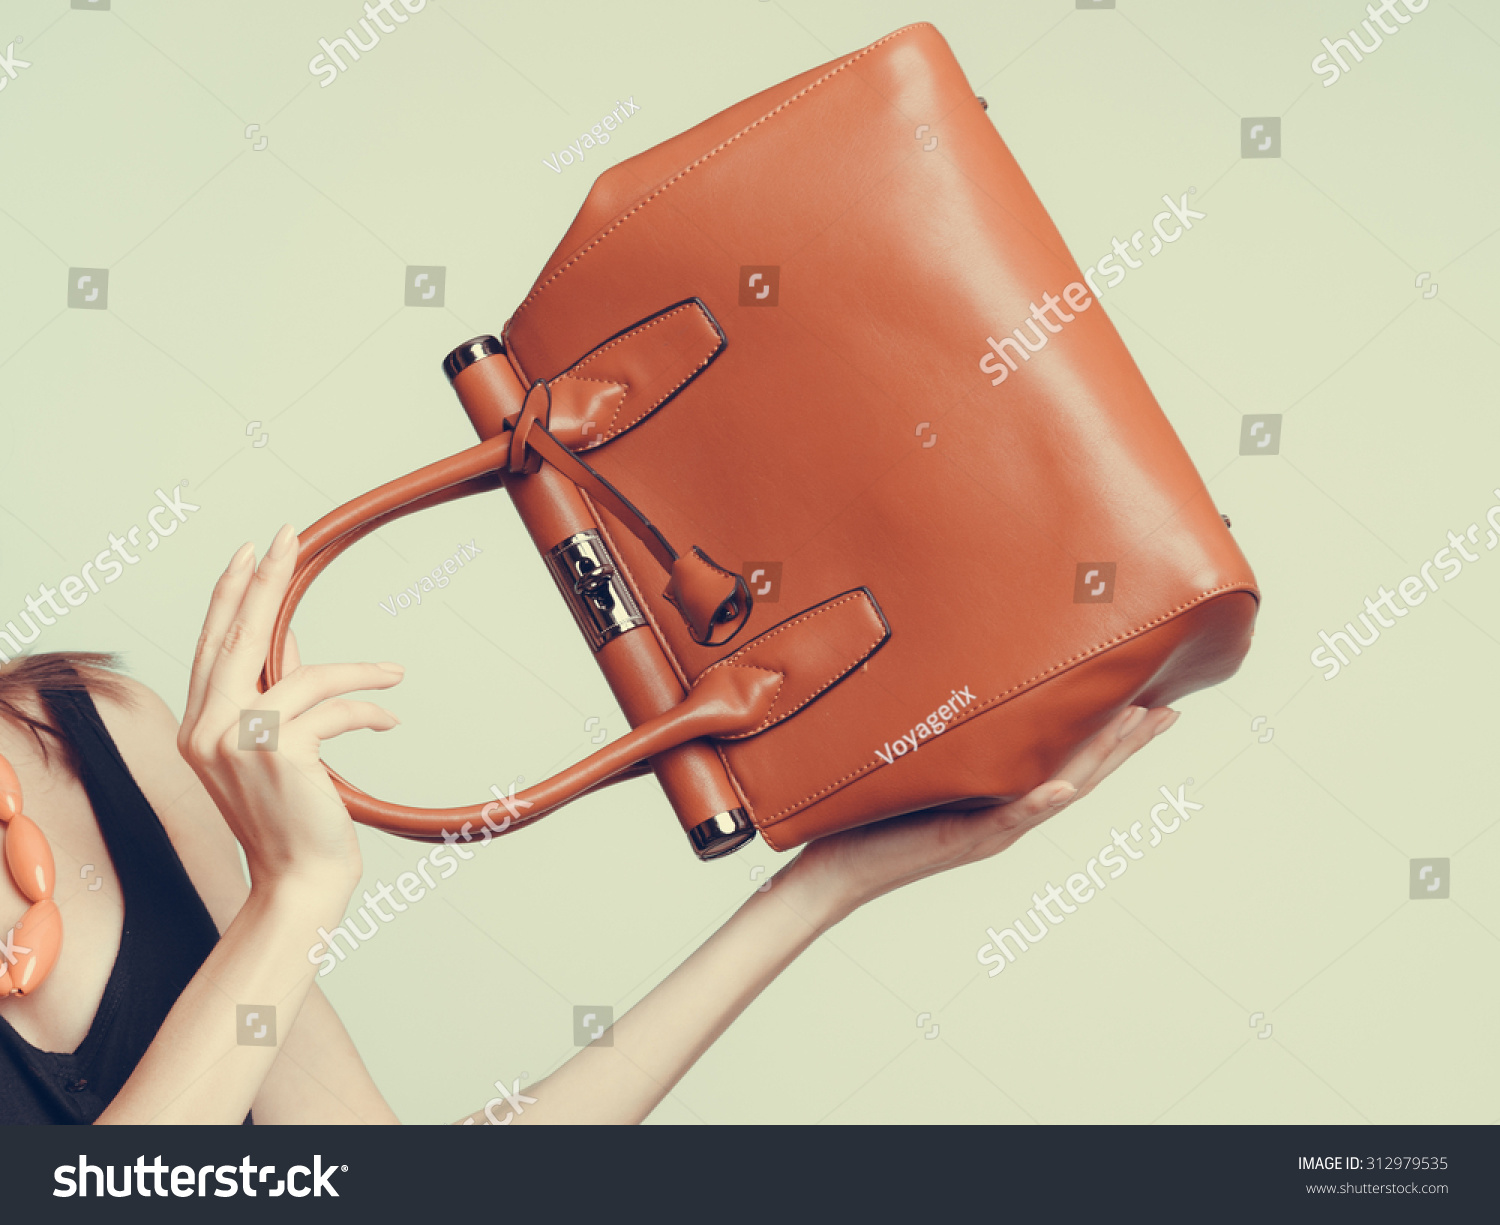 Elegant Fashionable Woman With Leather Handbag. Stylish Girl Holding